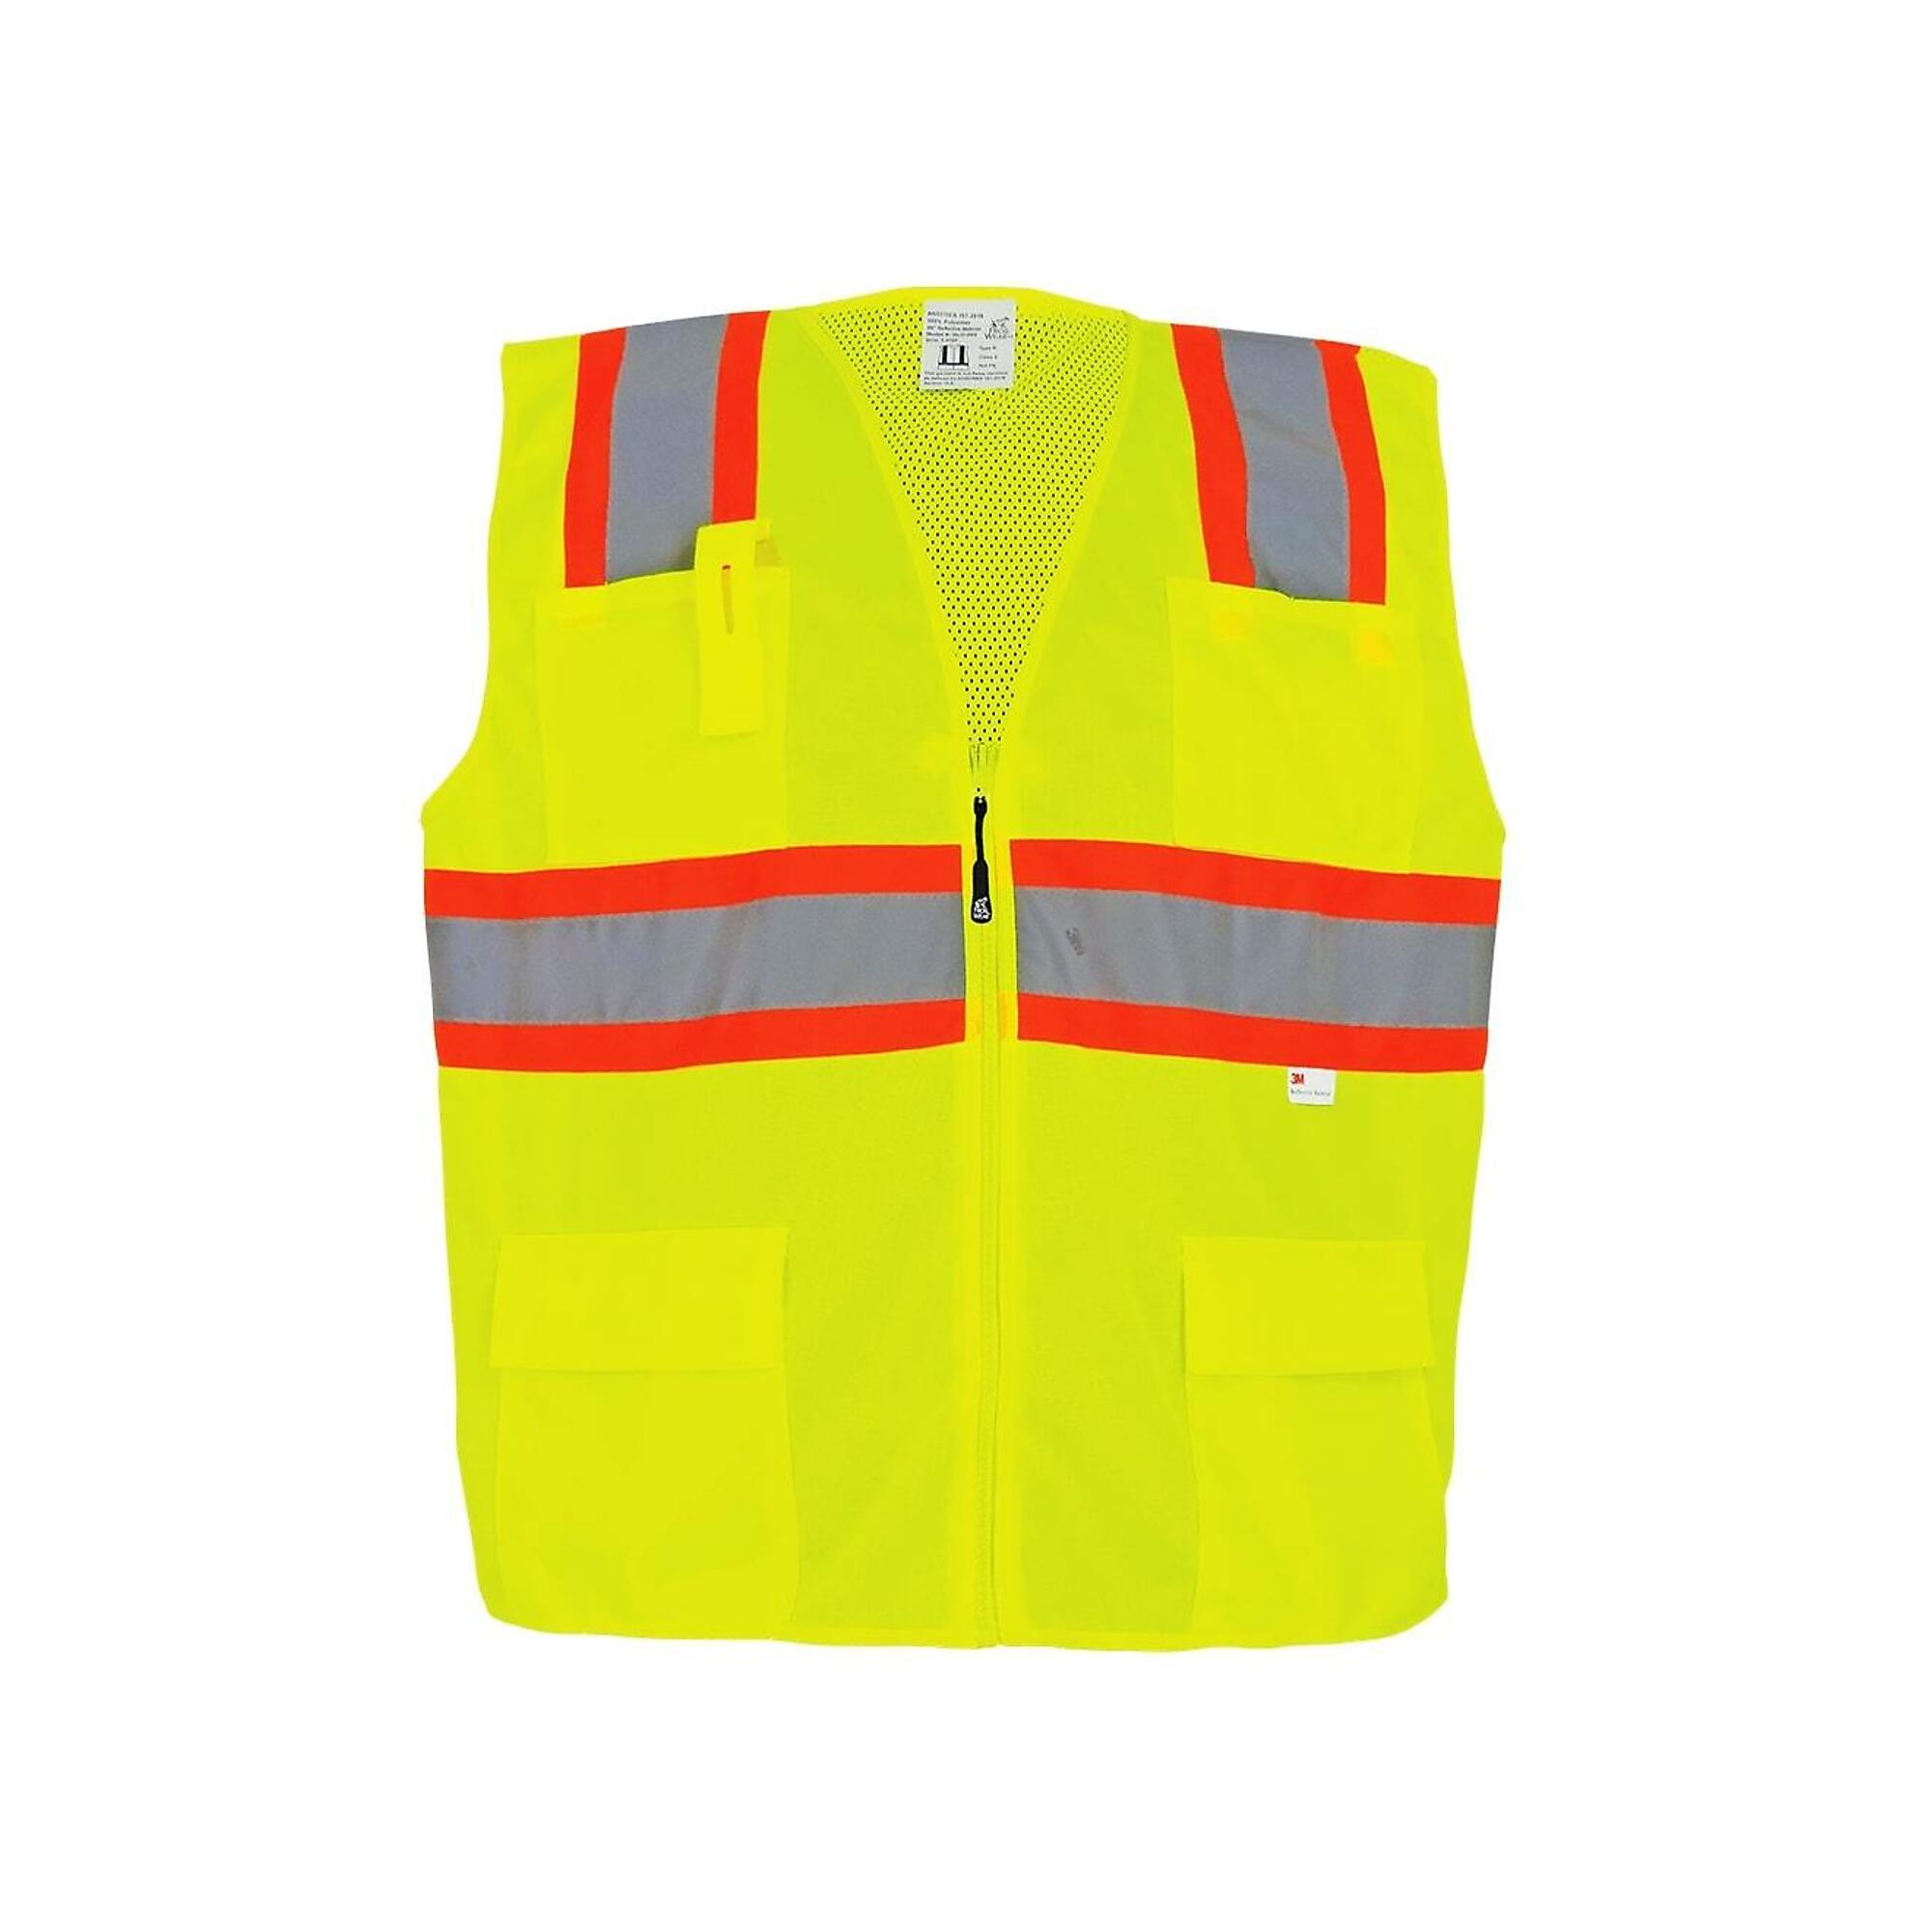 FrogWear Surveyors Vest, 4XL, Yellow, Model GLO-003-4XL